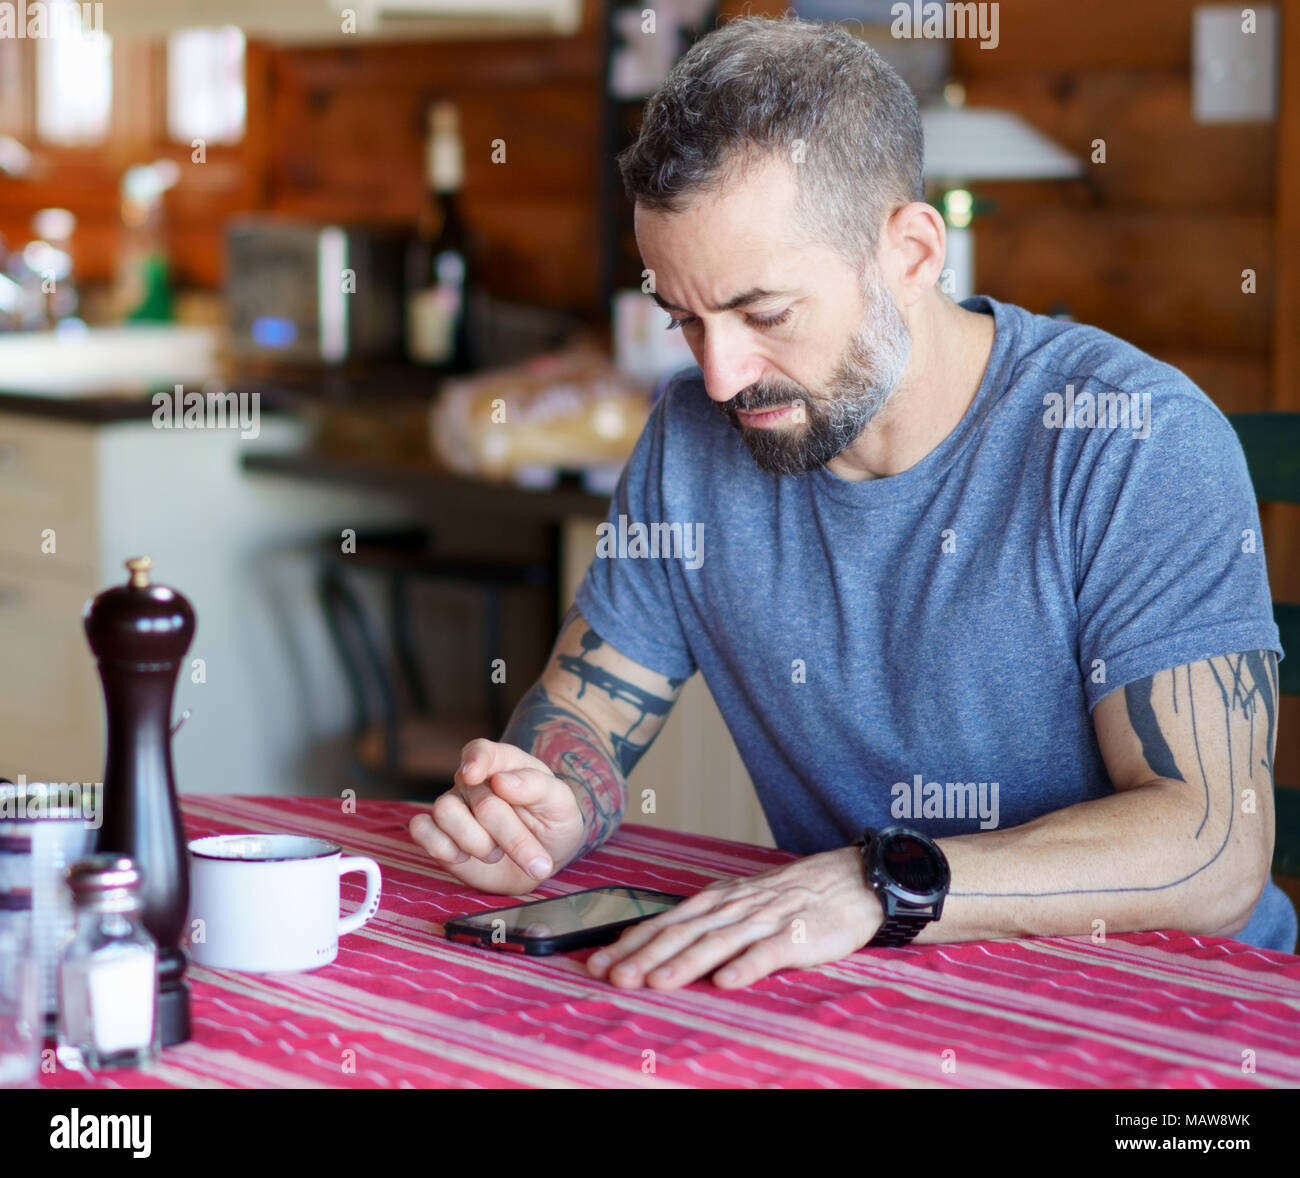 Von Mitte 30 Bart und tätowierte Mann an seinem Smartphone am Küchentisch mit einer roten Tischdecke und trägt ein blaues T-Shirt und ein großes Ansehen. Stockfoto